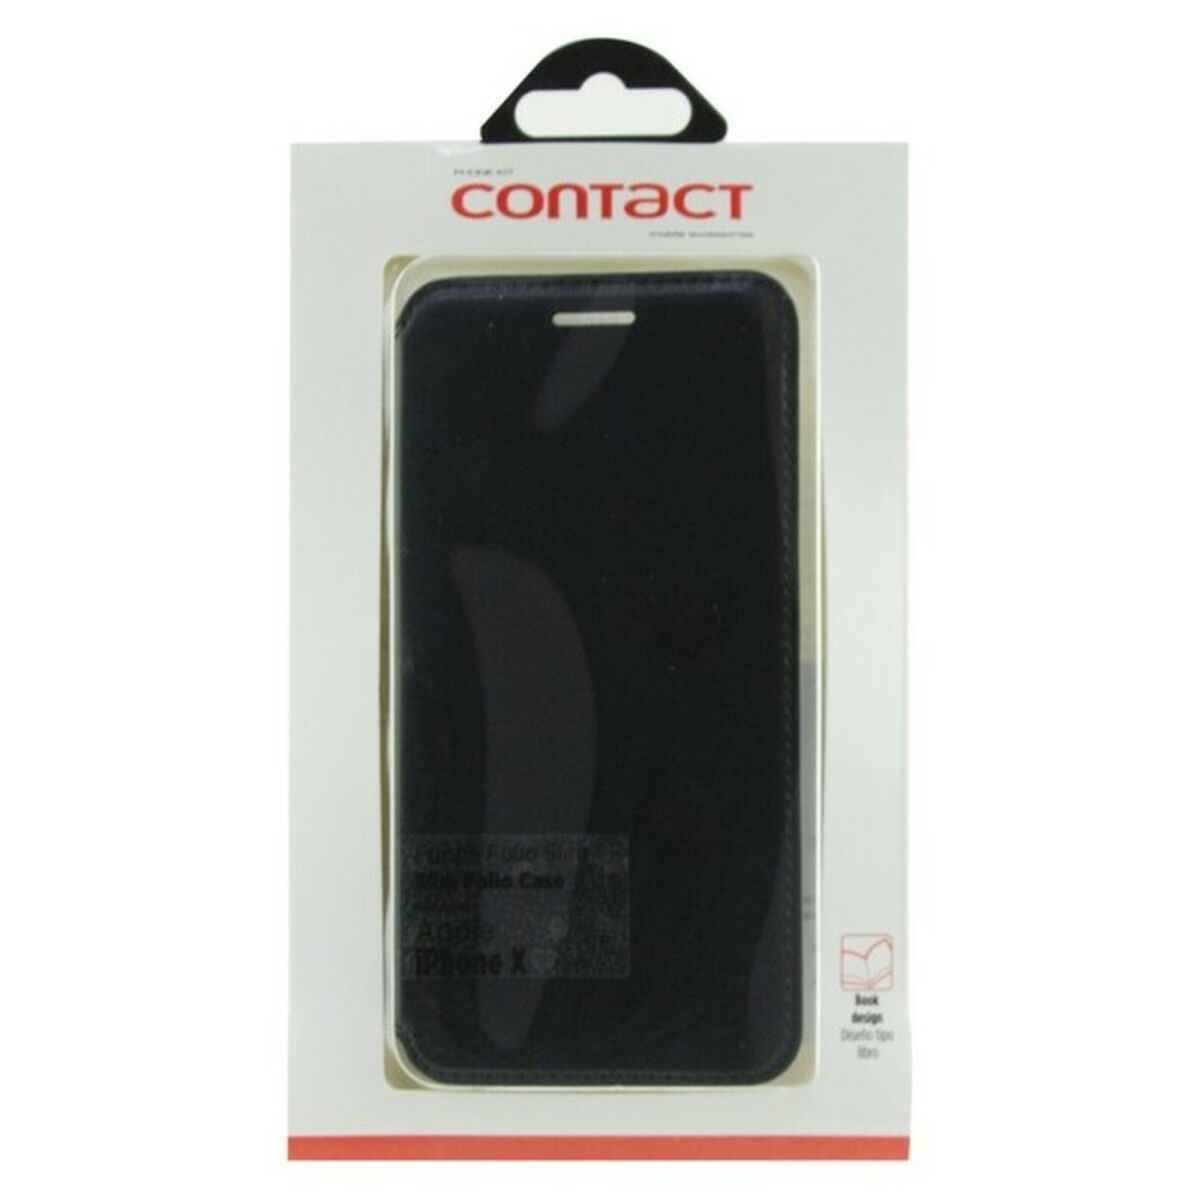 Housse pour Mobile avec coque Iphone X Contact Slim Noir Textile Polycarbonate